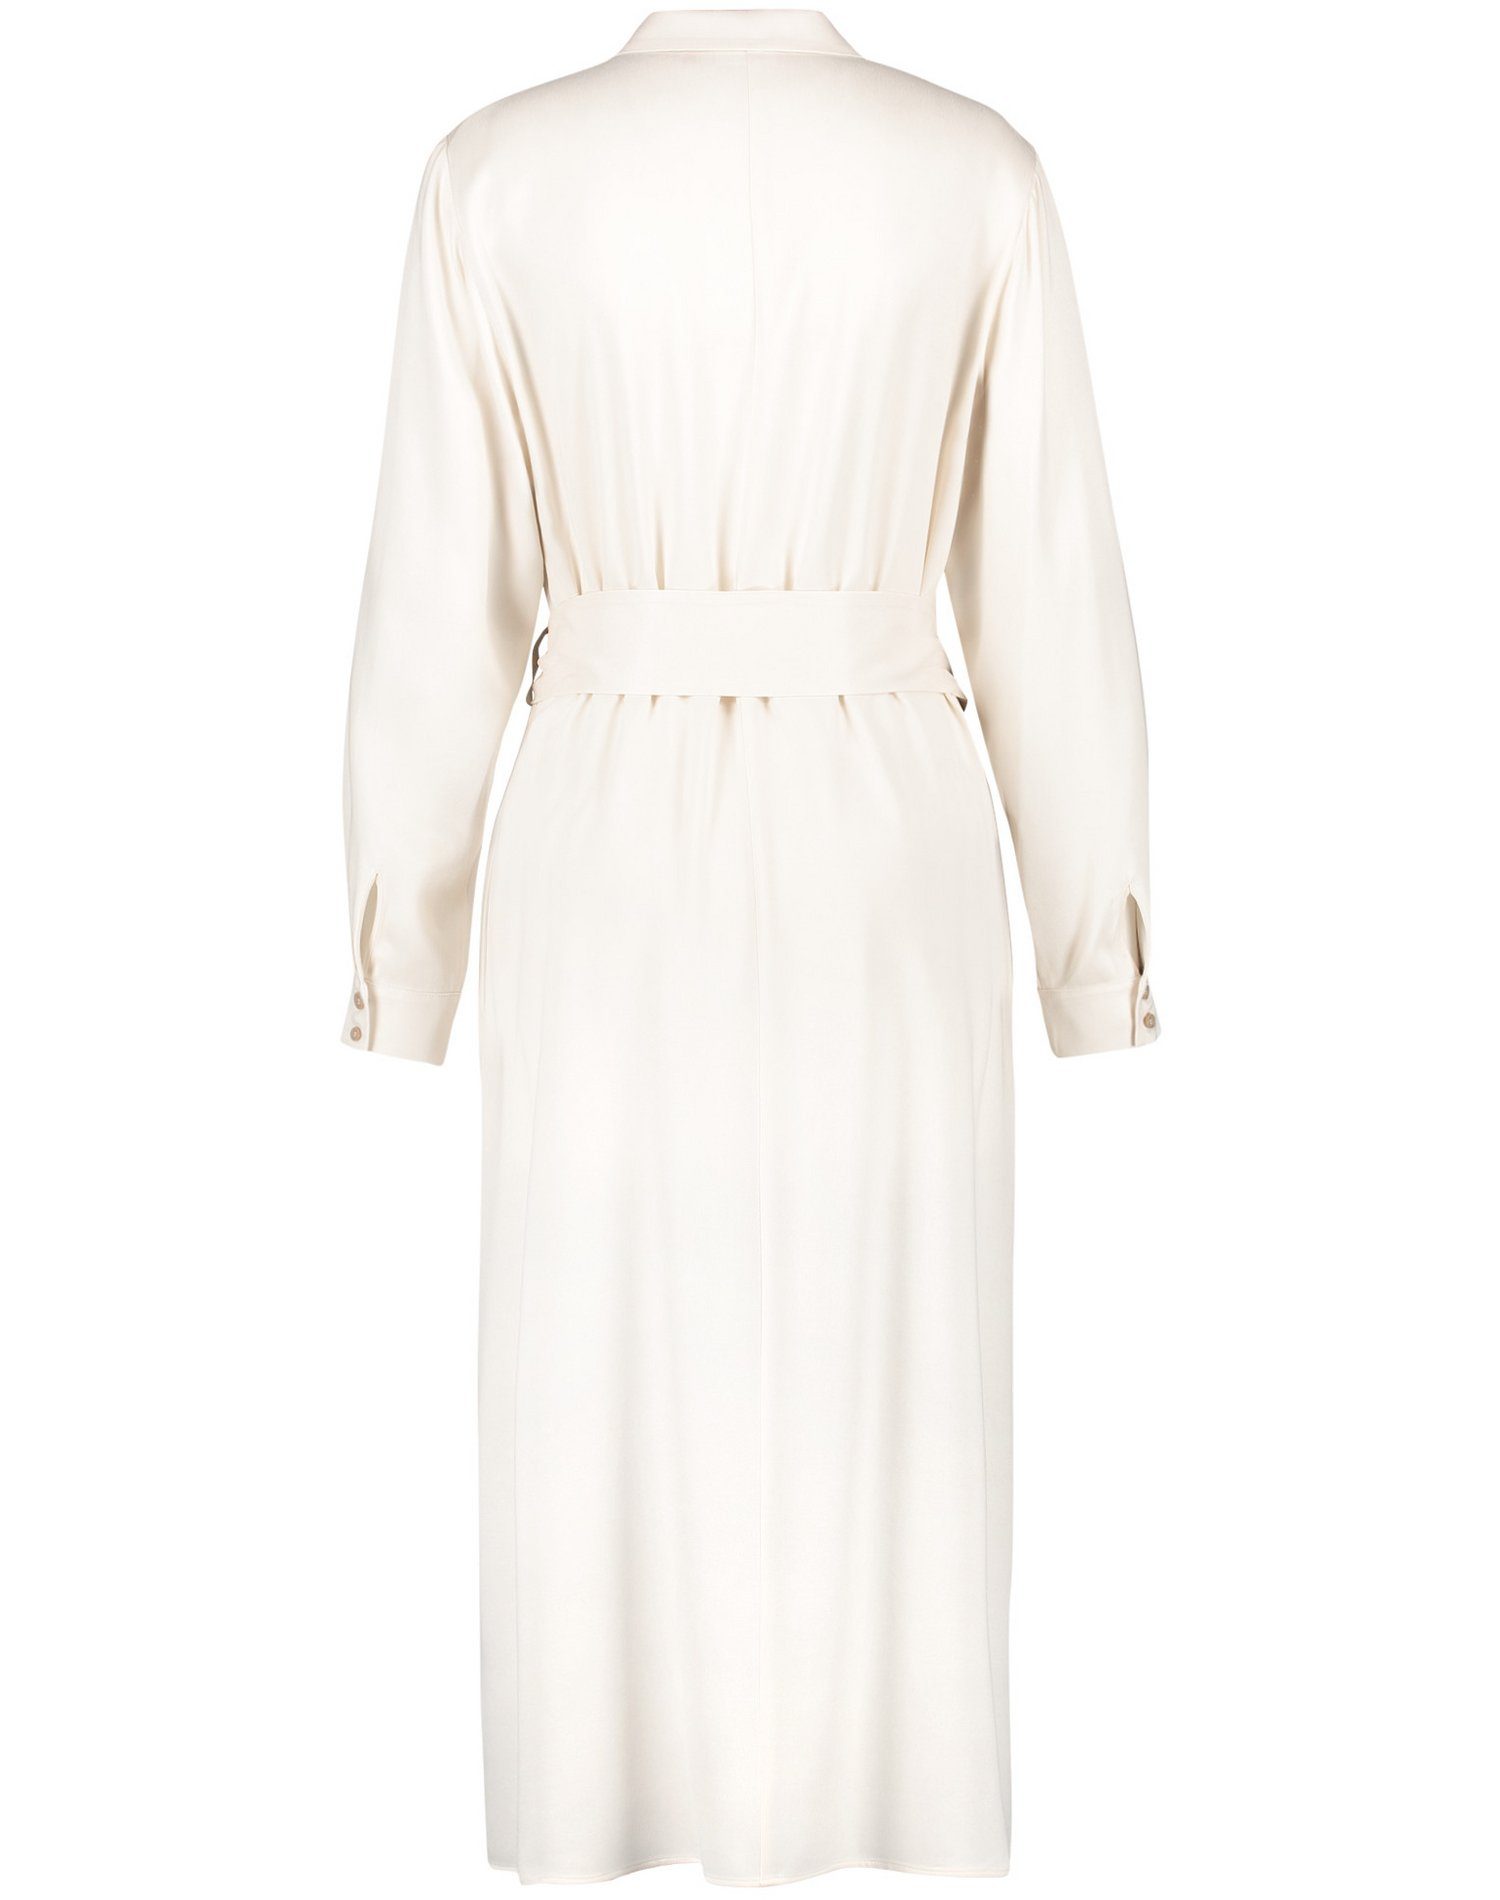 Damen Kleider GERRY WEBER Midikleid Blusenkleid mit softem Schimmer